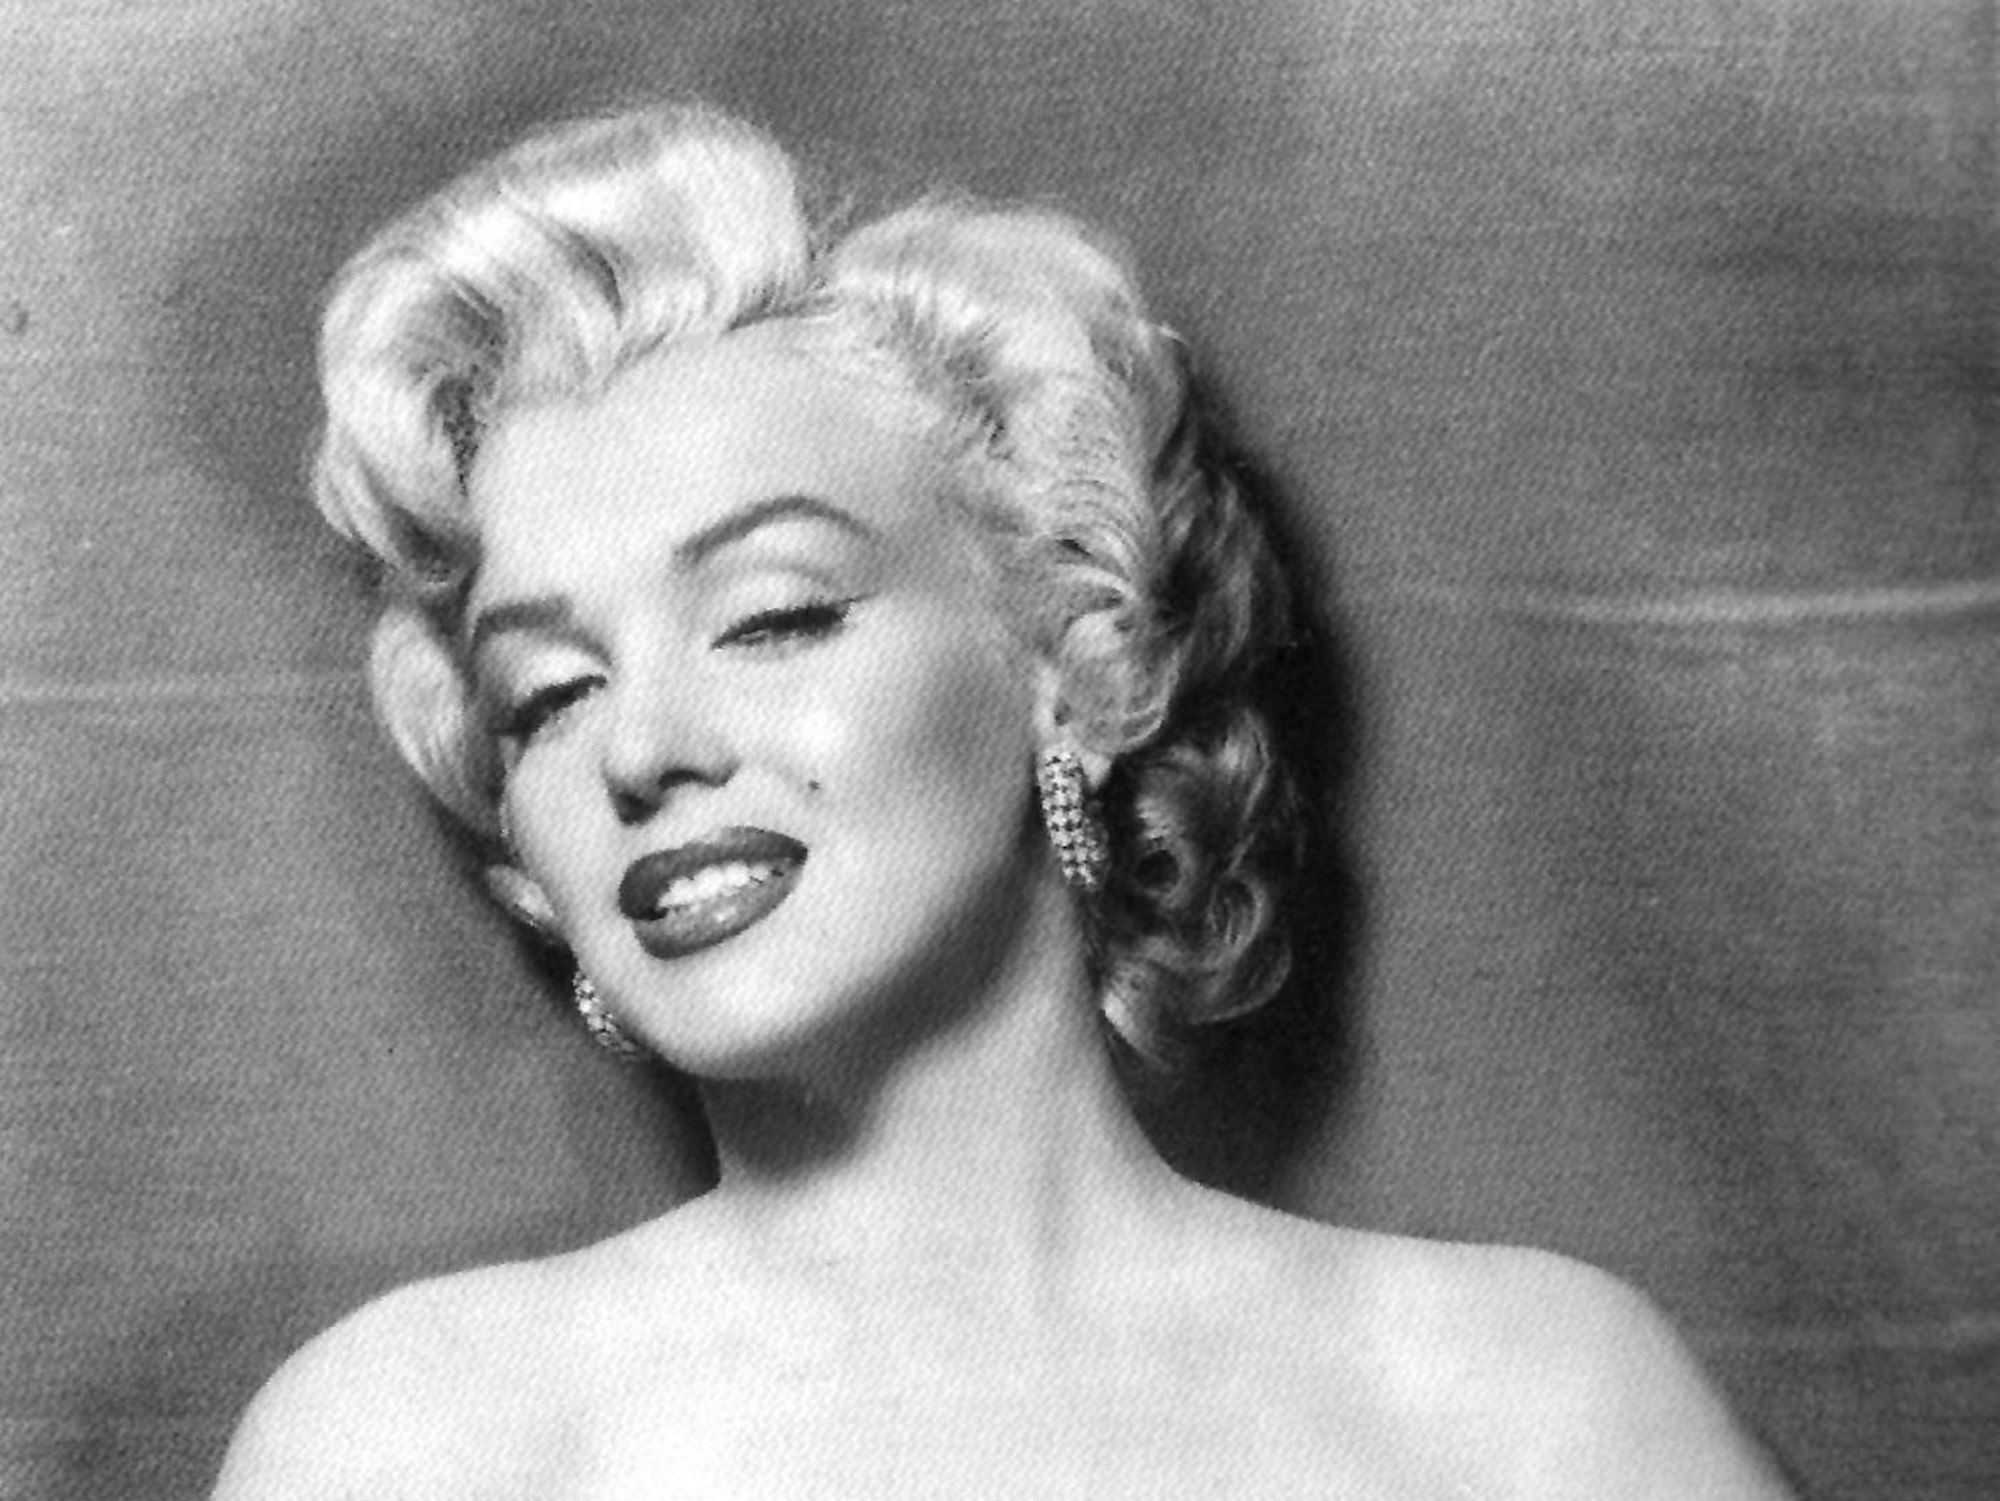 Marilyn Monroe auf einer schwarz-weiß-Aufnahme.